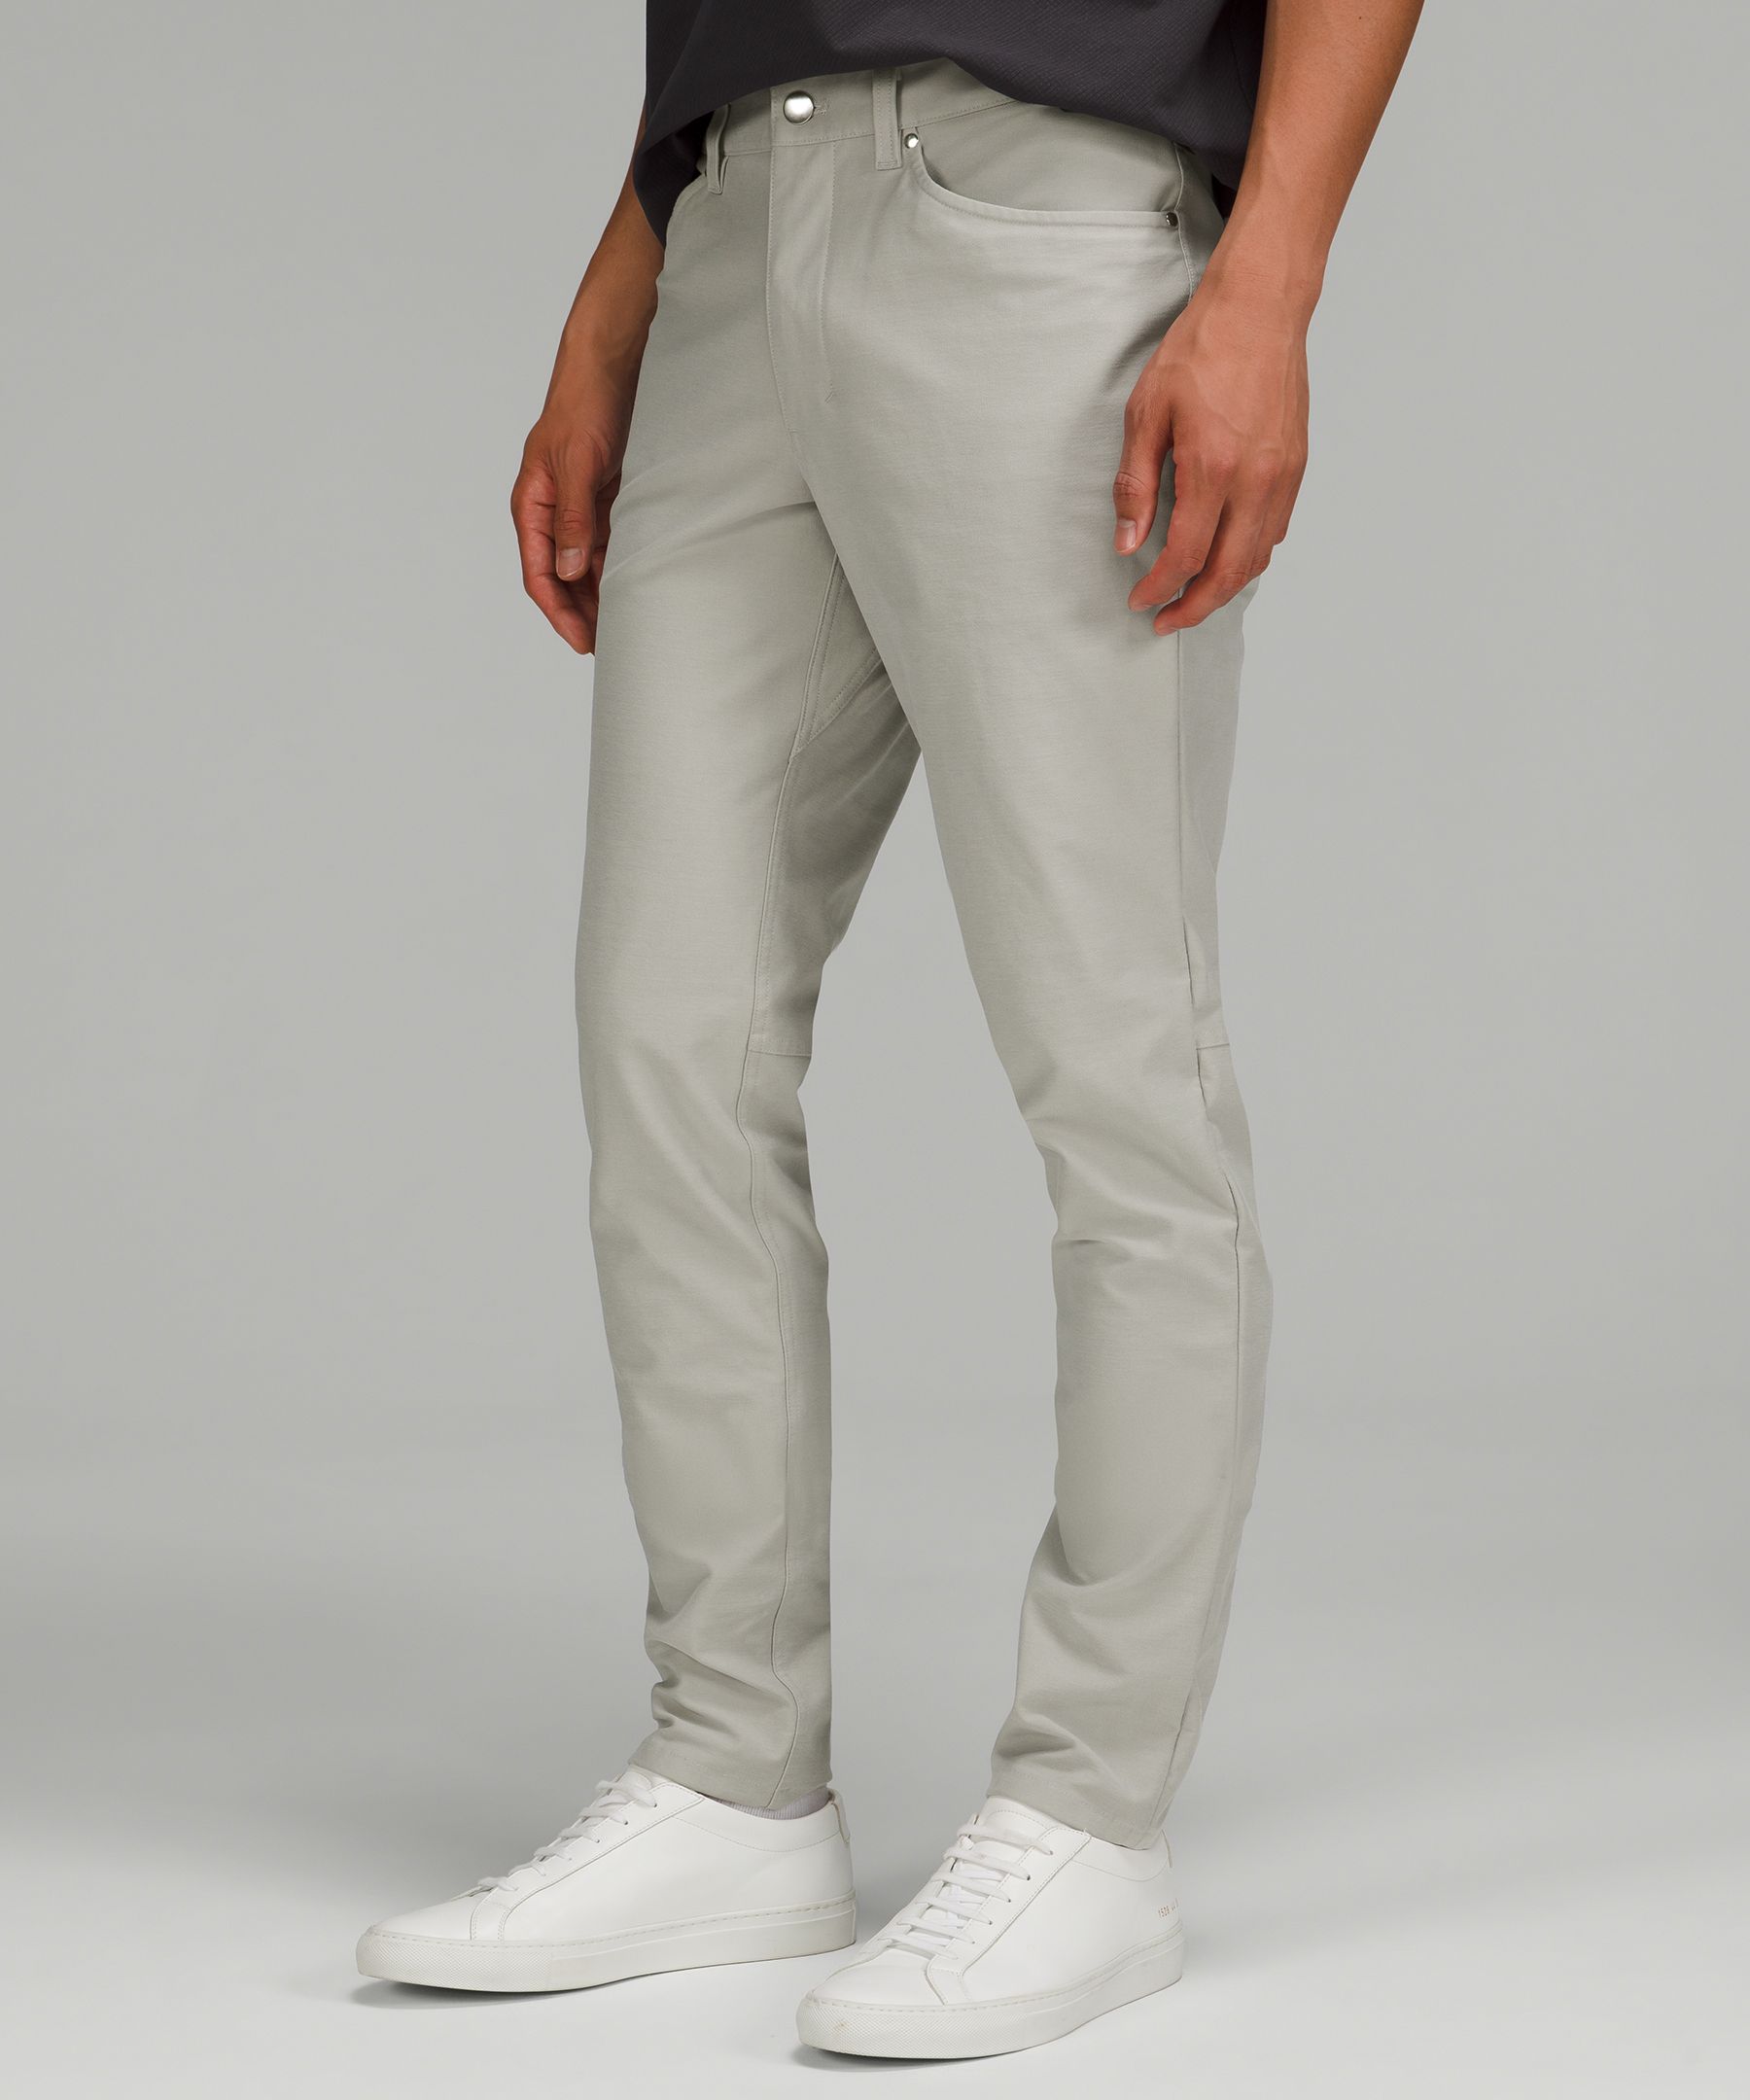 ABC Slim-Fit 5 Pocket Pant 32L *Utilitech, Men's Trousers